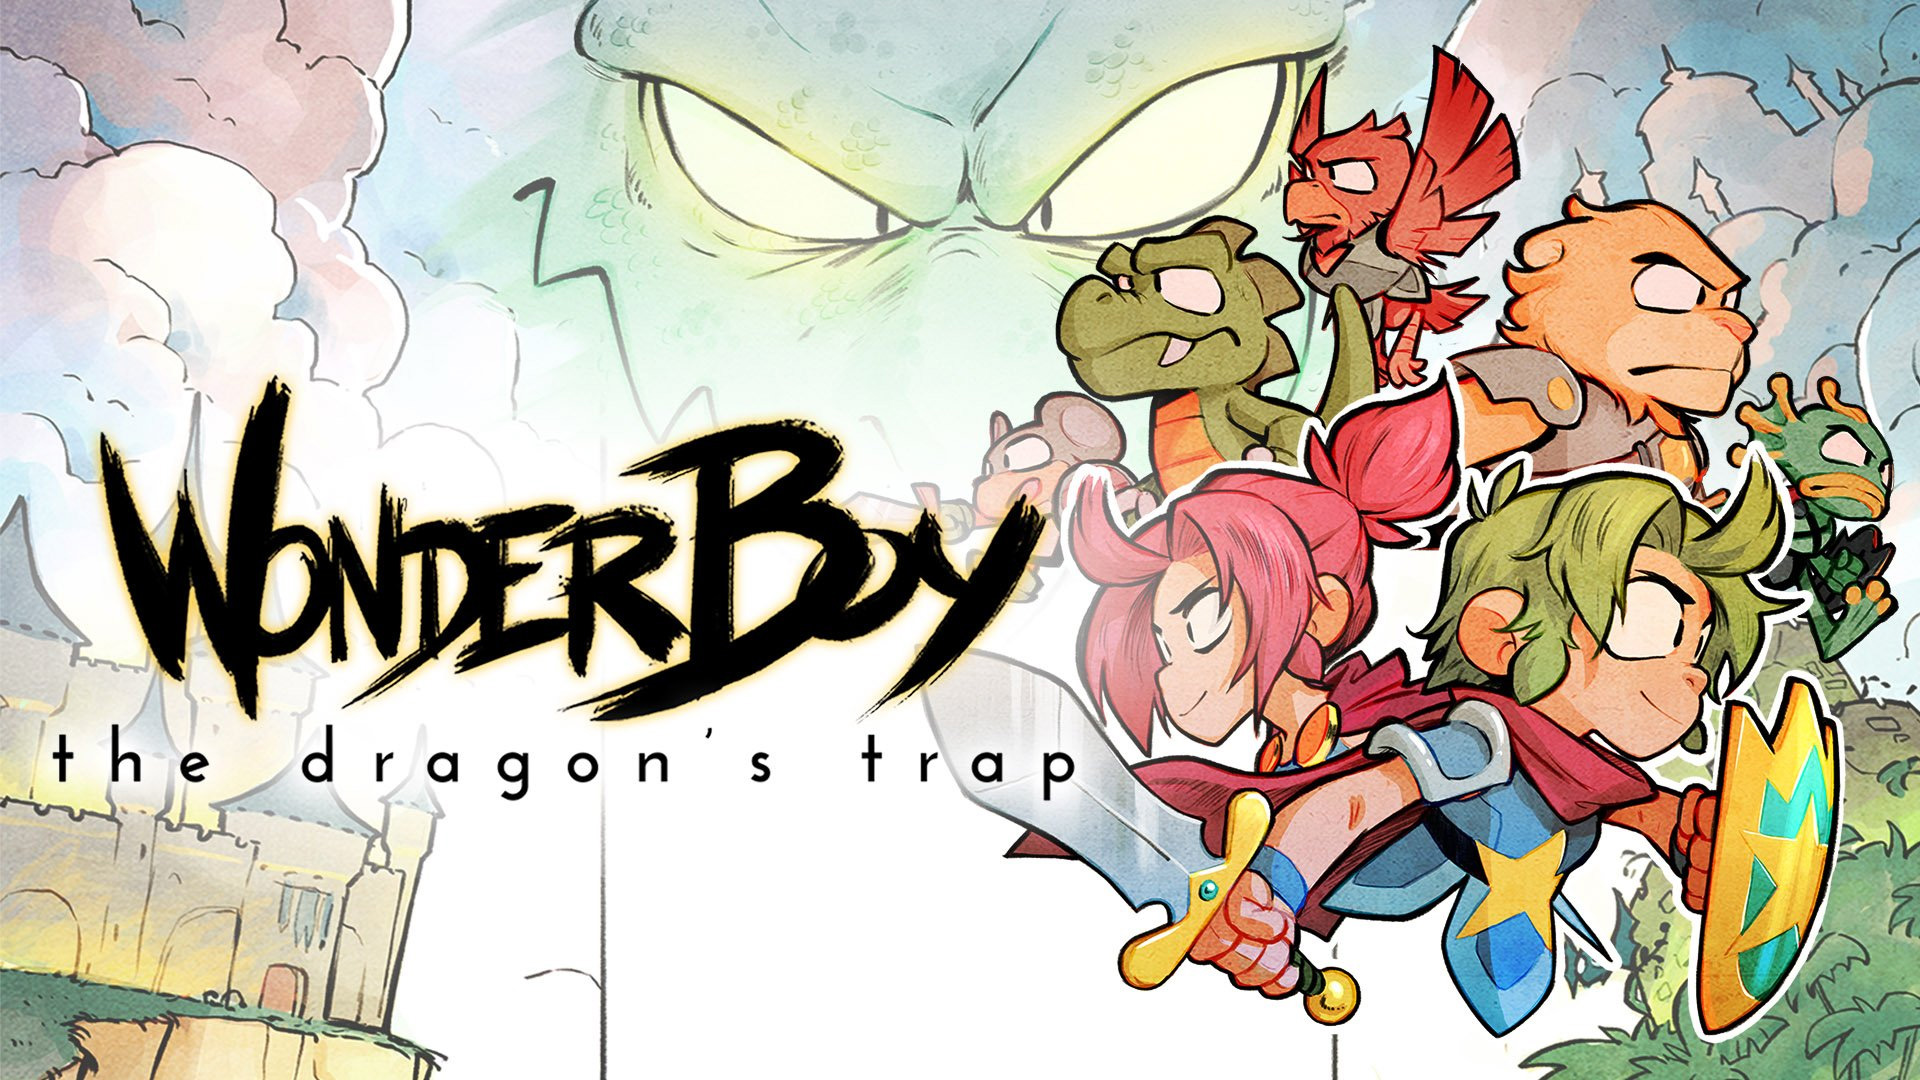 Wonder Boy The Dragon's Trap - HD Wallpaper 